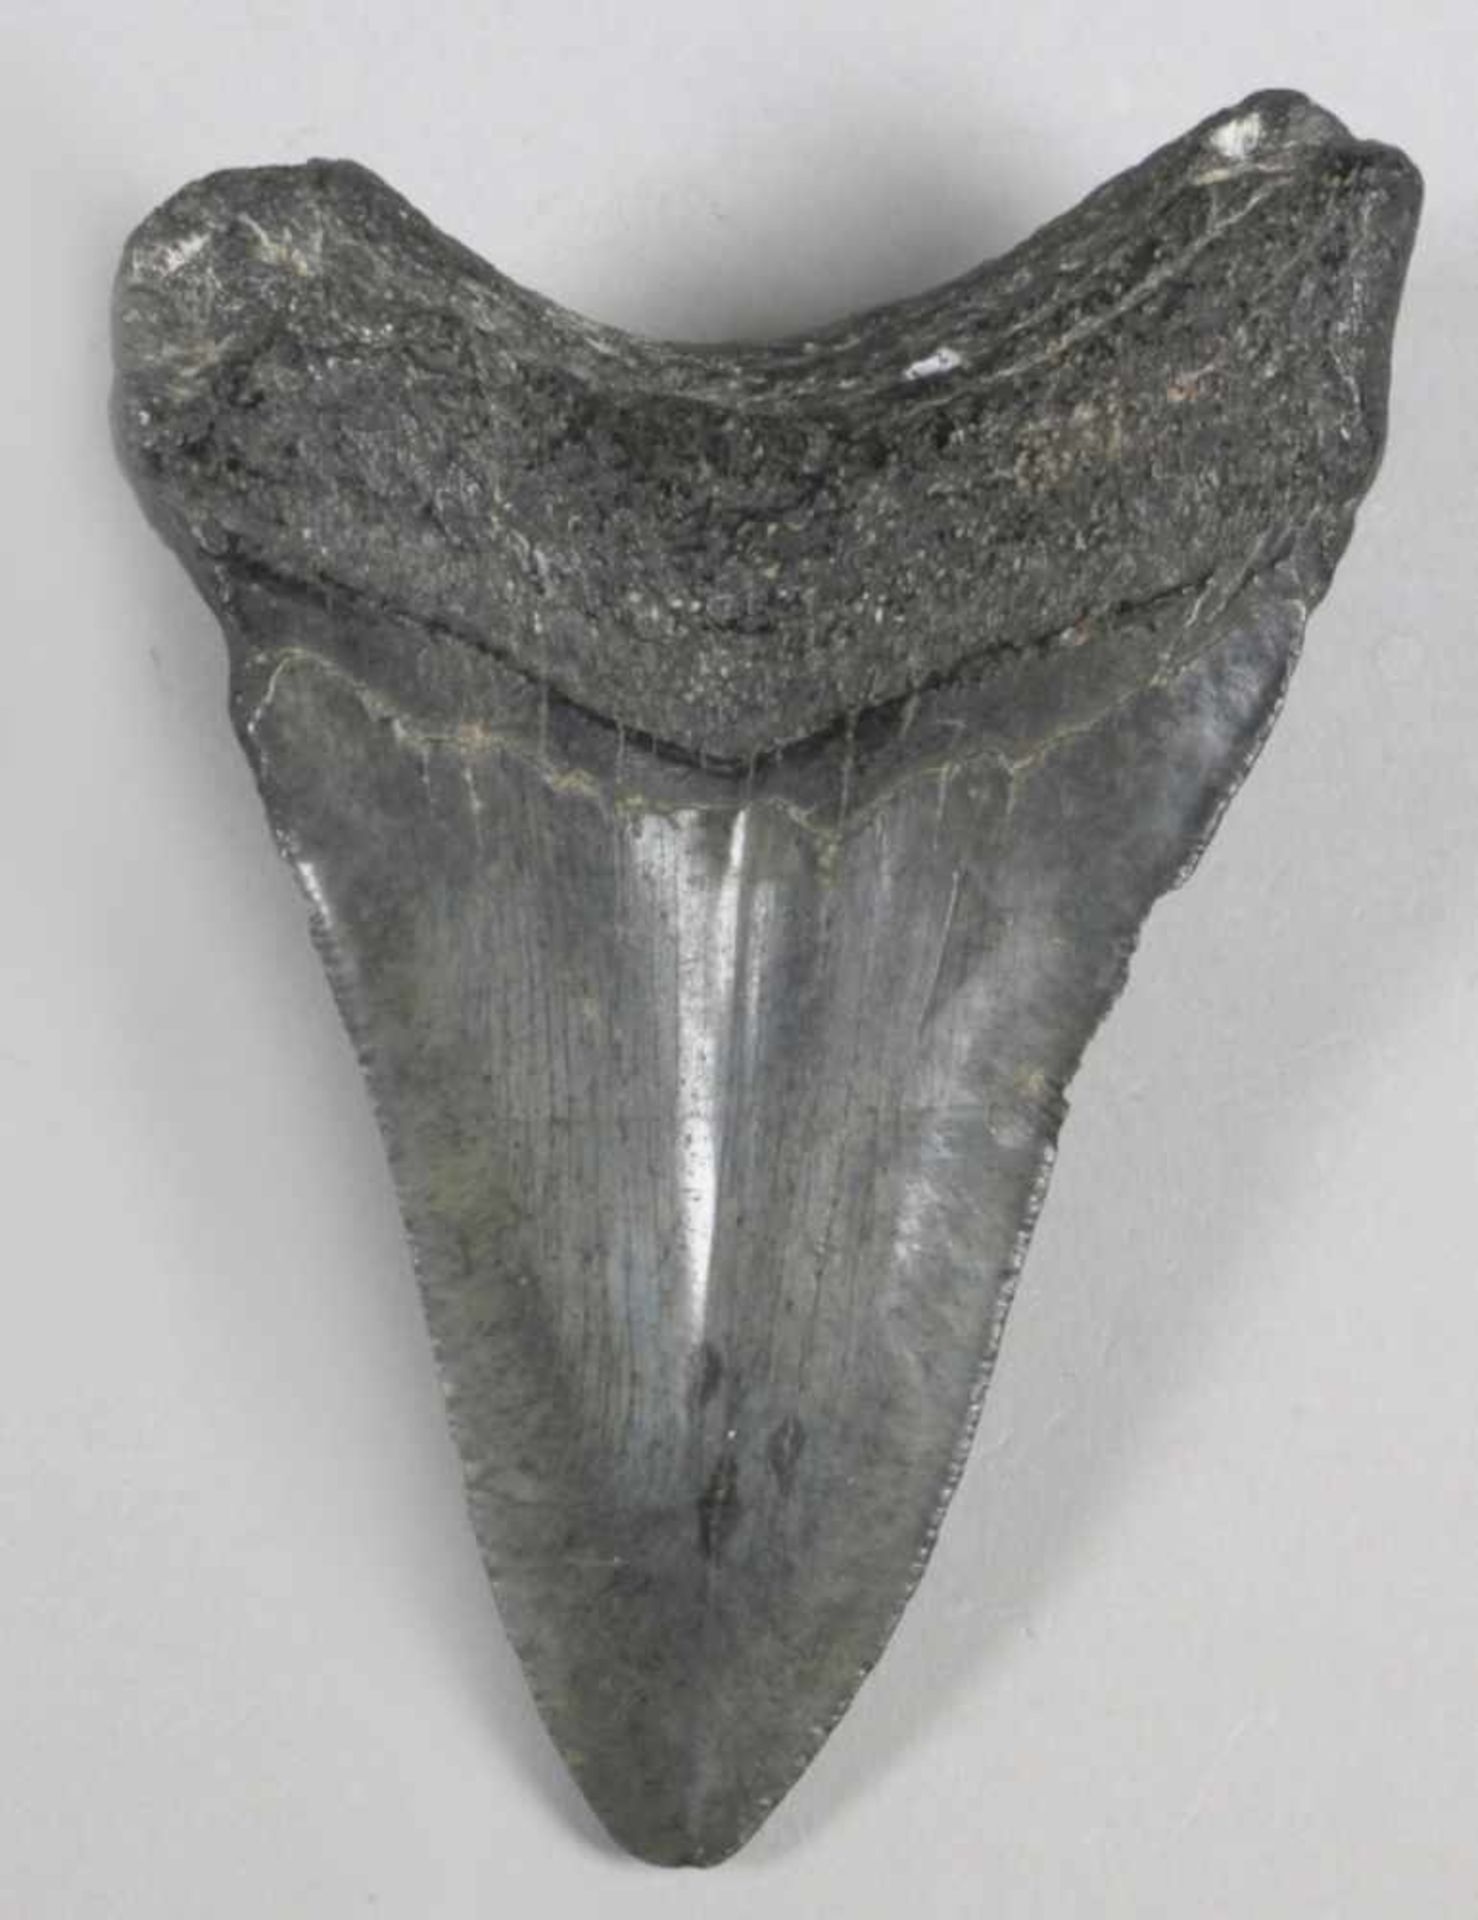 Versteinerter Haifischzahn, gebogte, spitz zulaufende Form mit dunkler Patina und feinerÄderung - Bild 2 aus 2